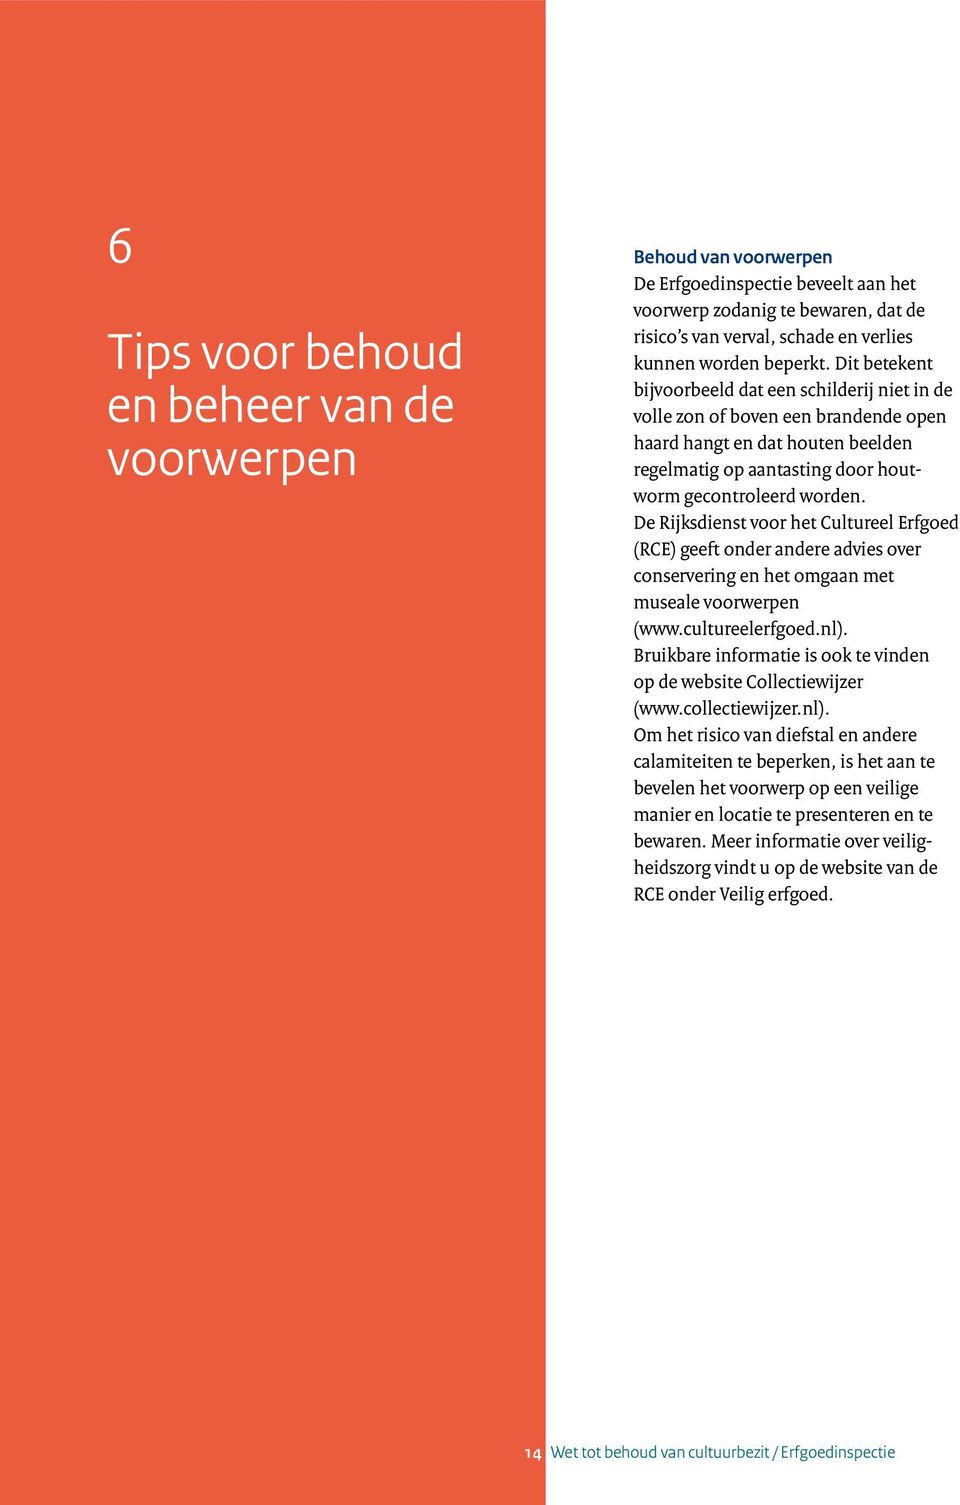 De Rijksdienst voor het Cultureel Erfgoed (RCE) geeft onder andere advies over conservering en het omgaan met museale voorwerpen (www.cultureelerfgoed.nl).